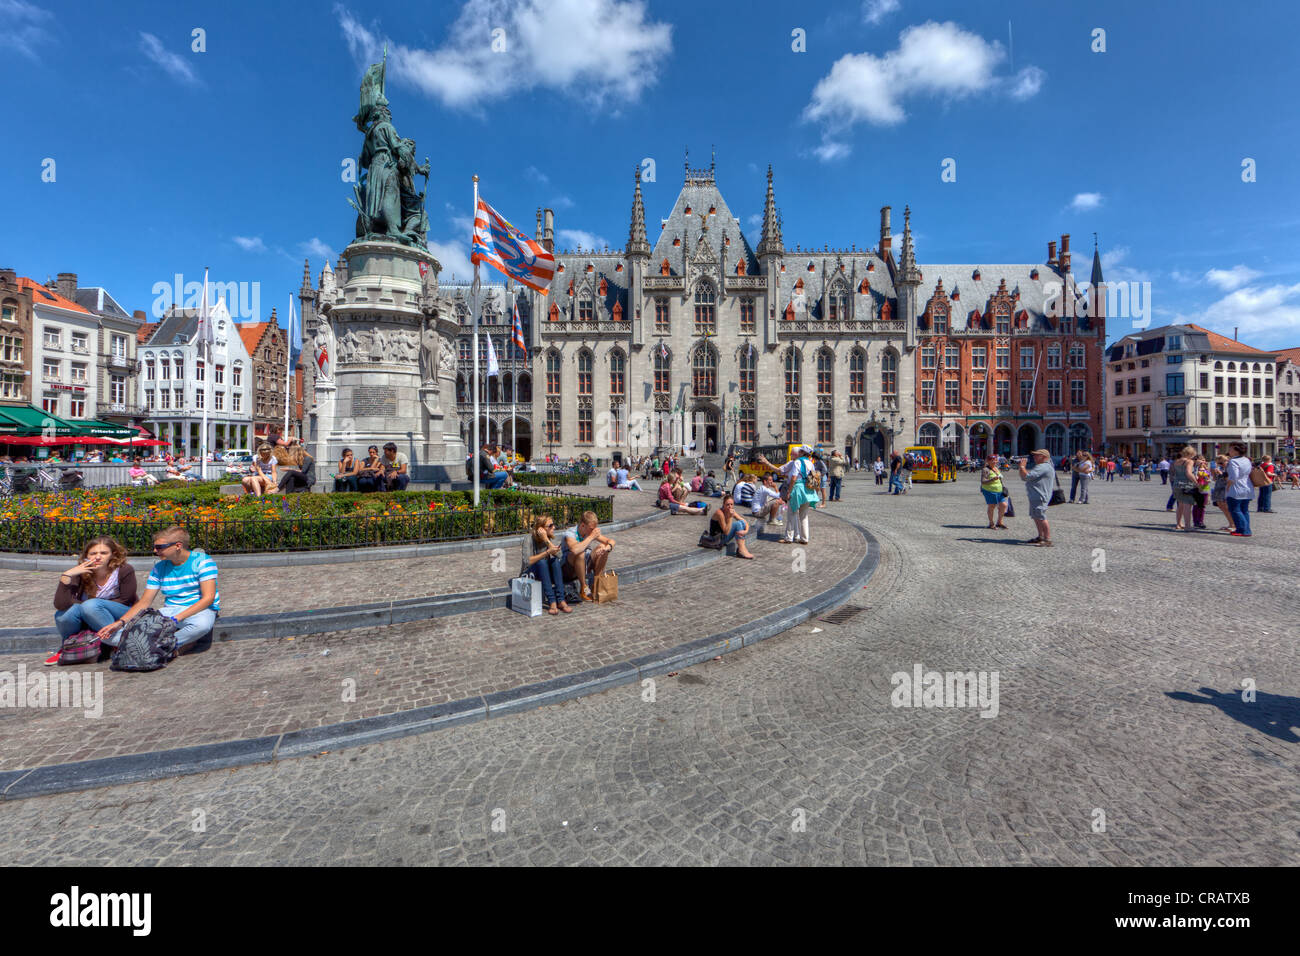 Provinciaal Hof, Cour provinciale, Grand-Place, centre historique de Bruges, site du patrimoine mondial de l'UNESCO, Flandre occidentale Banque D'Images